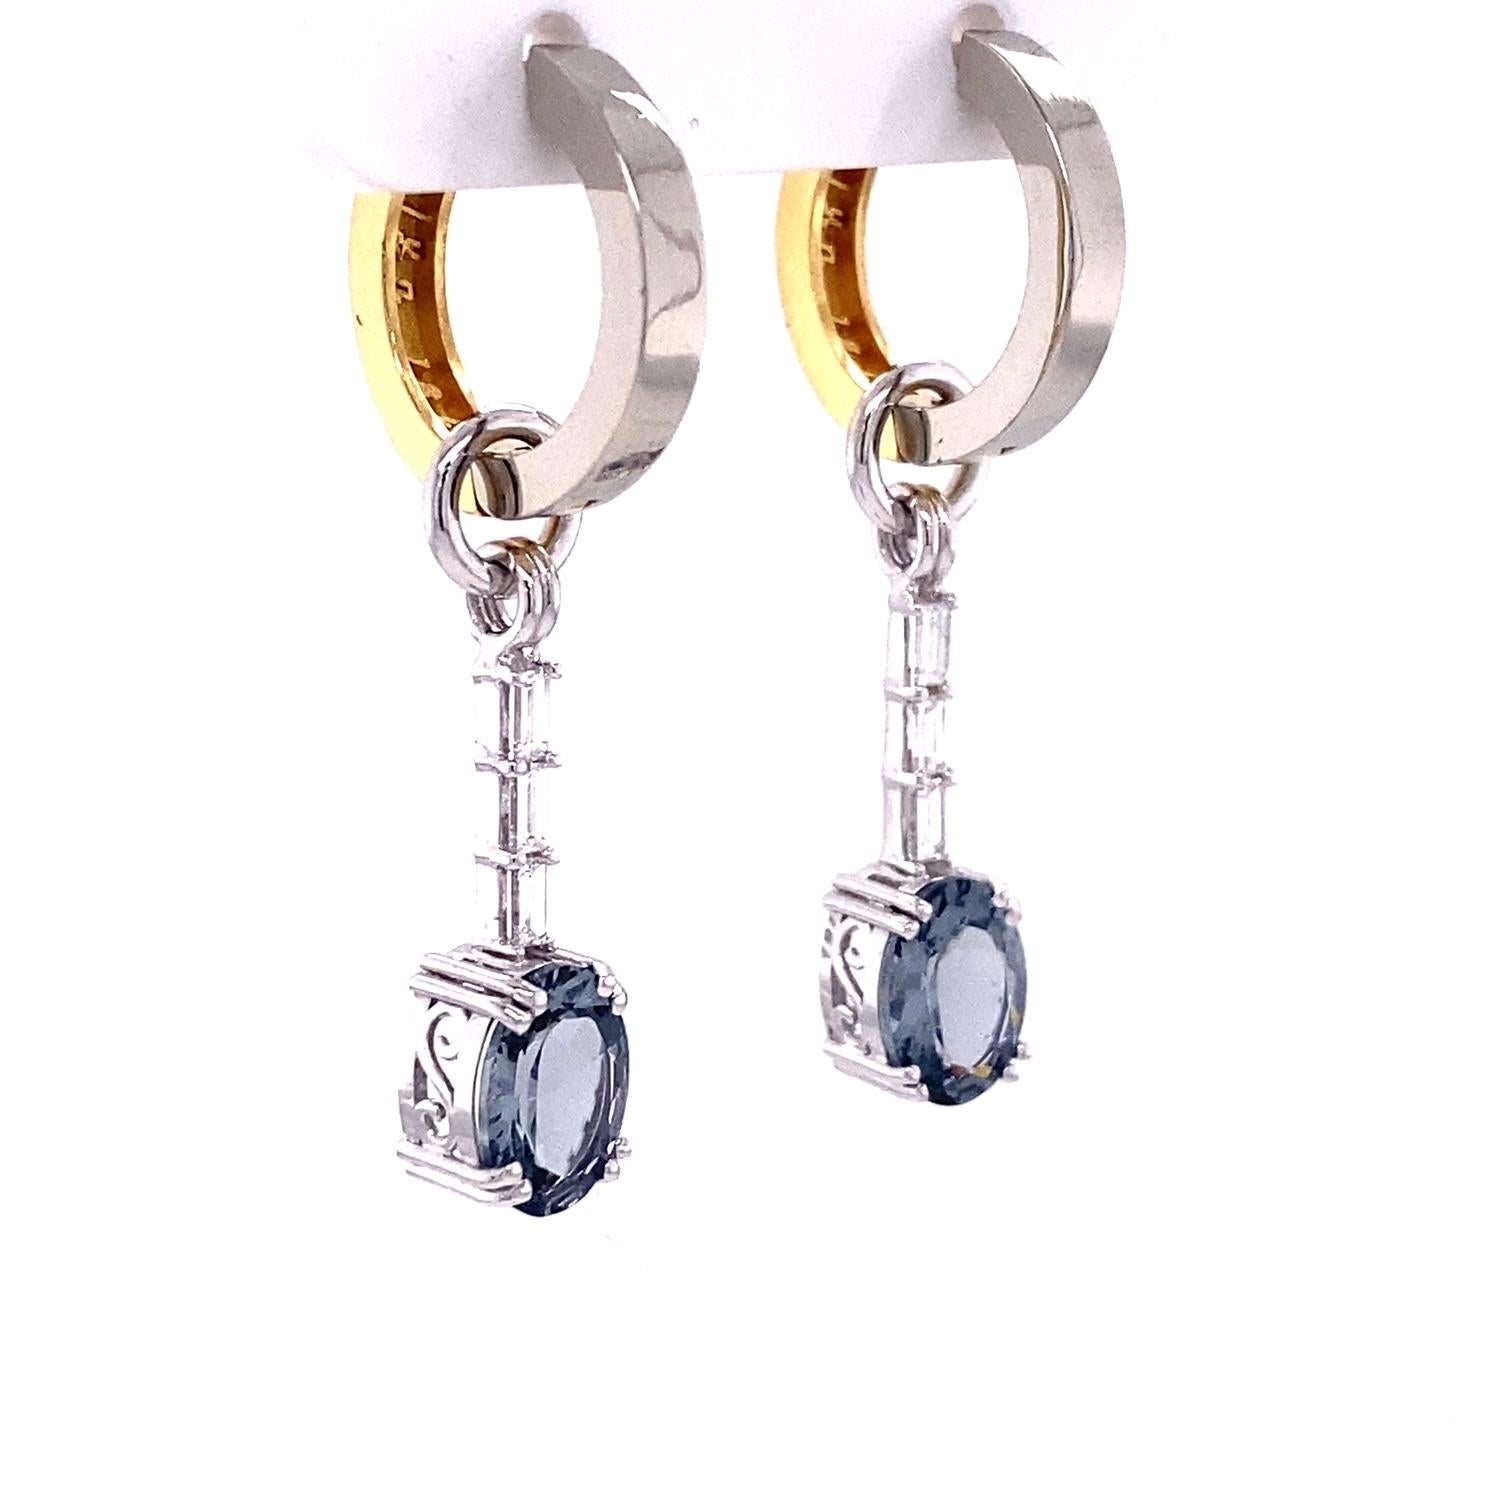 Une paire de vestes en or blanc 18k serties de 2,38 carats de spinelle gris ovale et de 6 diamants baguette, 0,29 carat au total, sur une paire de cerceaux réversibles en or blanc et jaune 18k. Boucles d'oreilles conçues et fabriquées par llyn